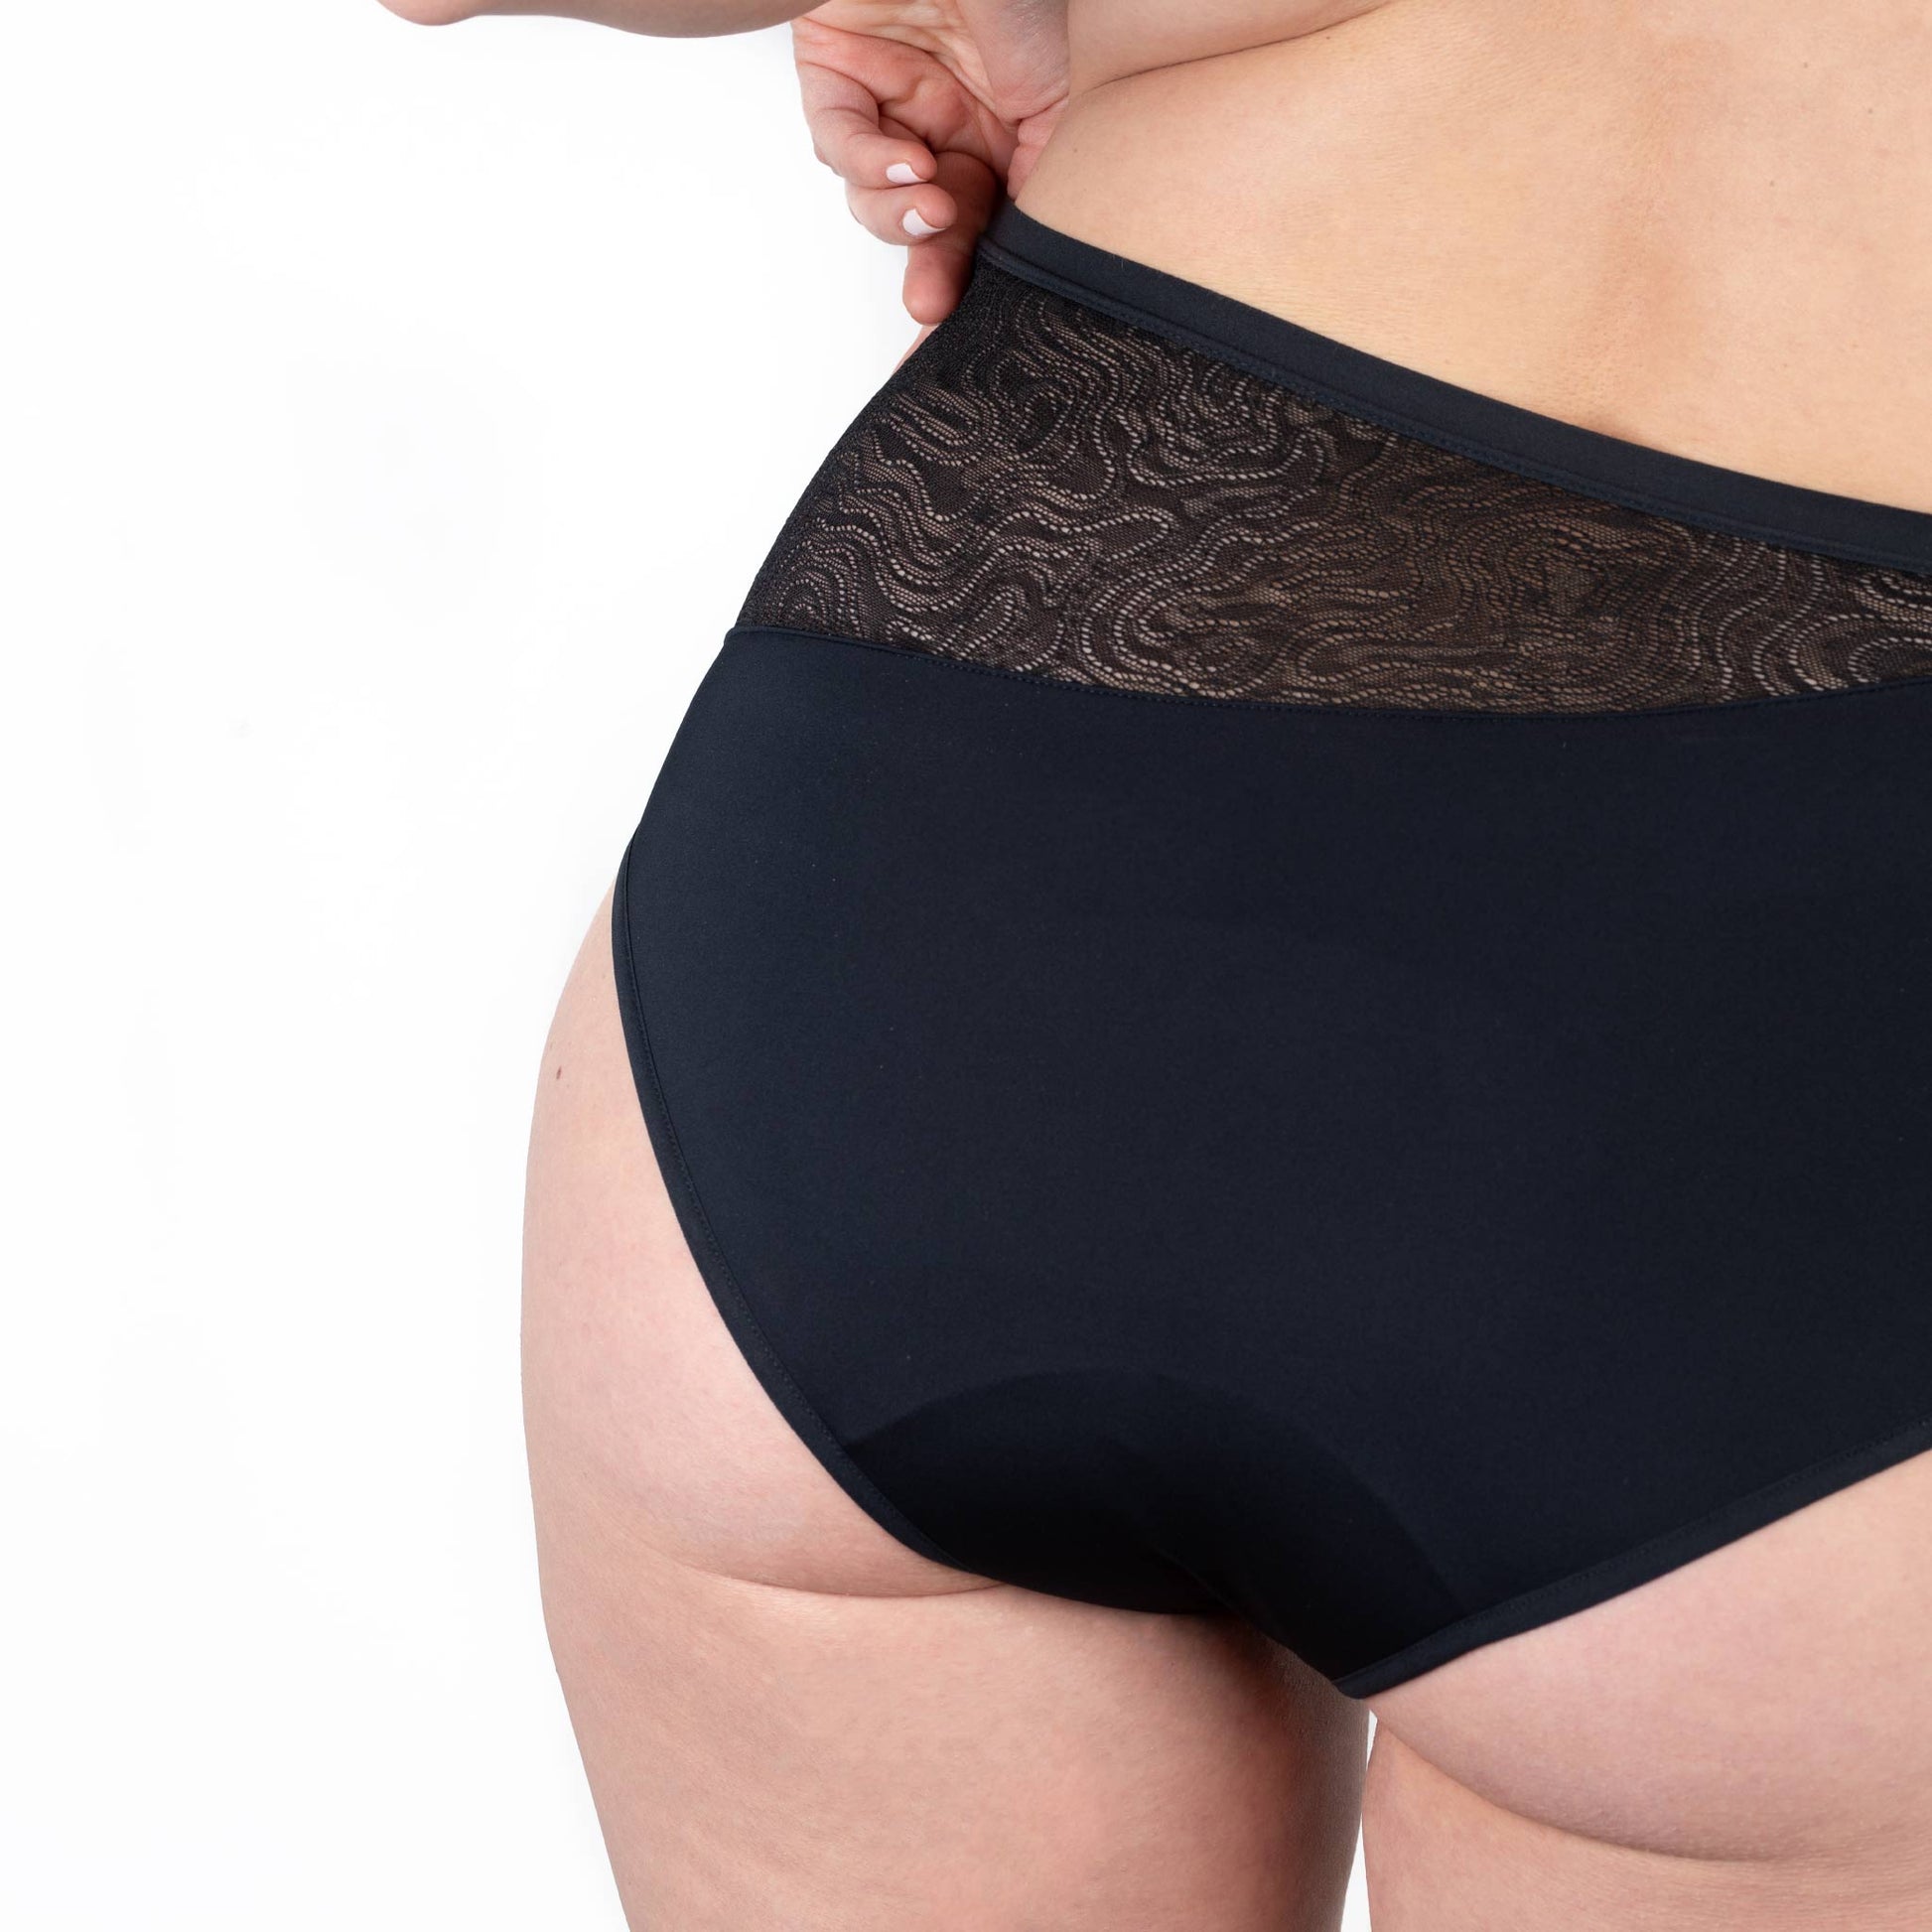 Period Underwear for Women Heavy Flow, Leak Proof Seamless High